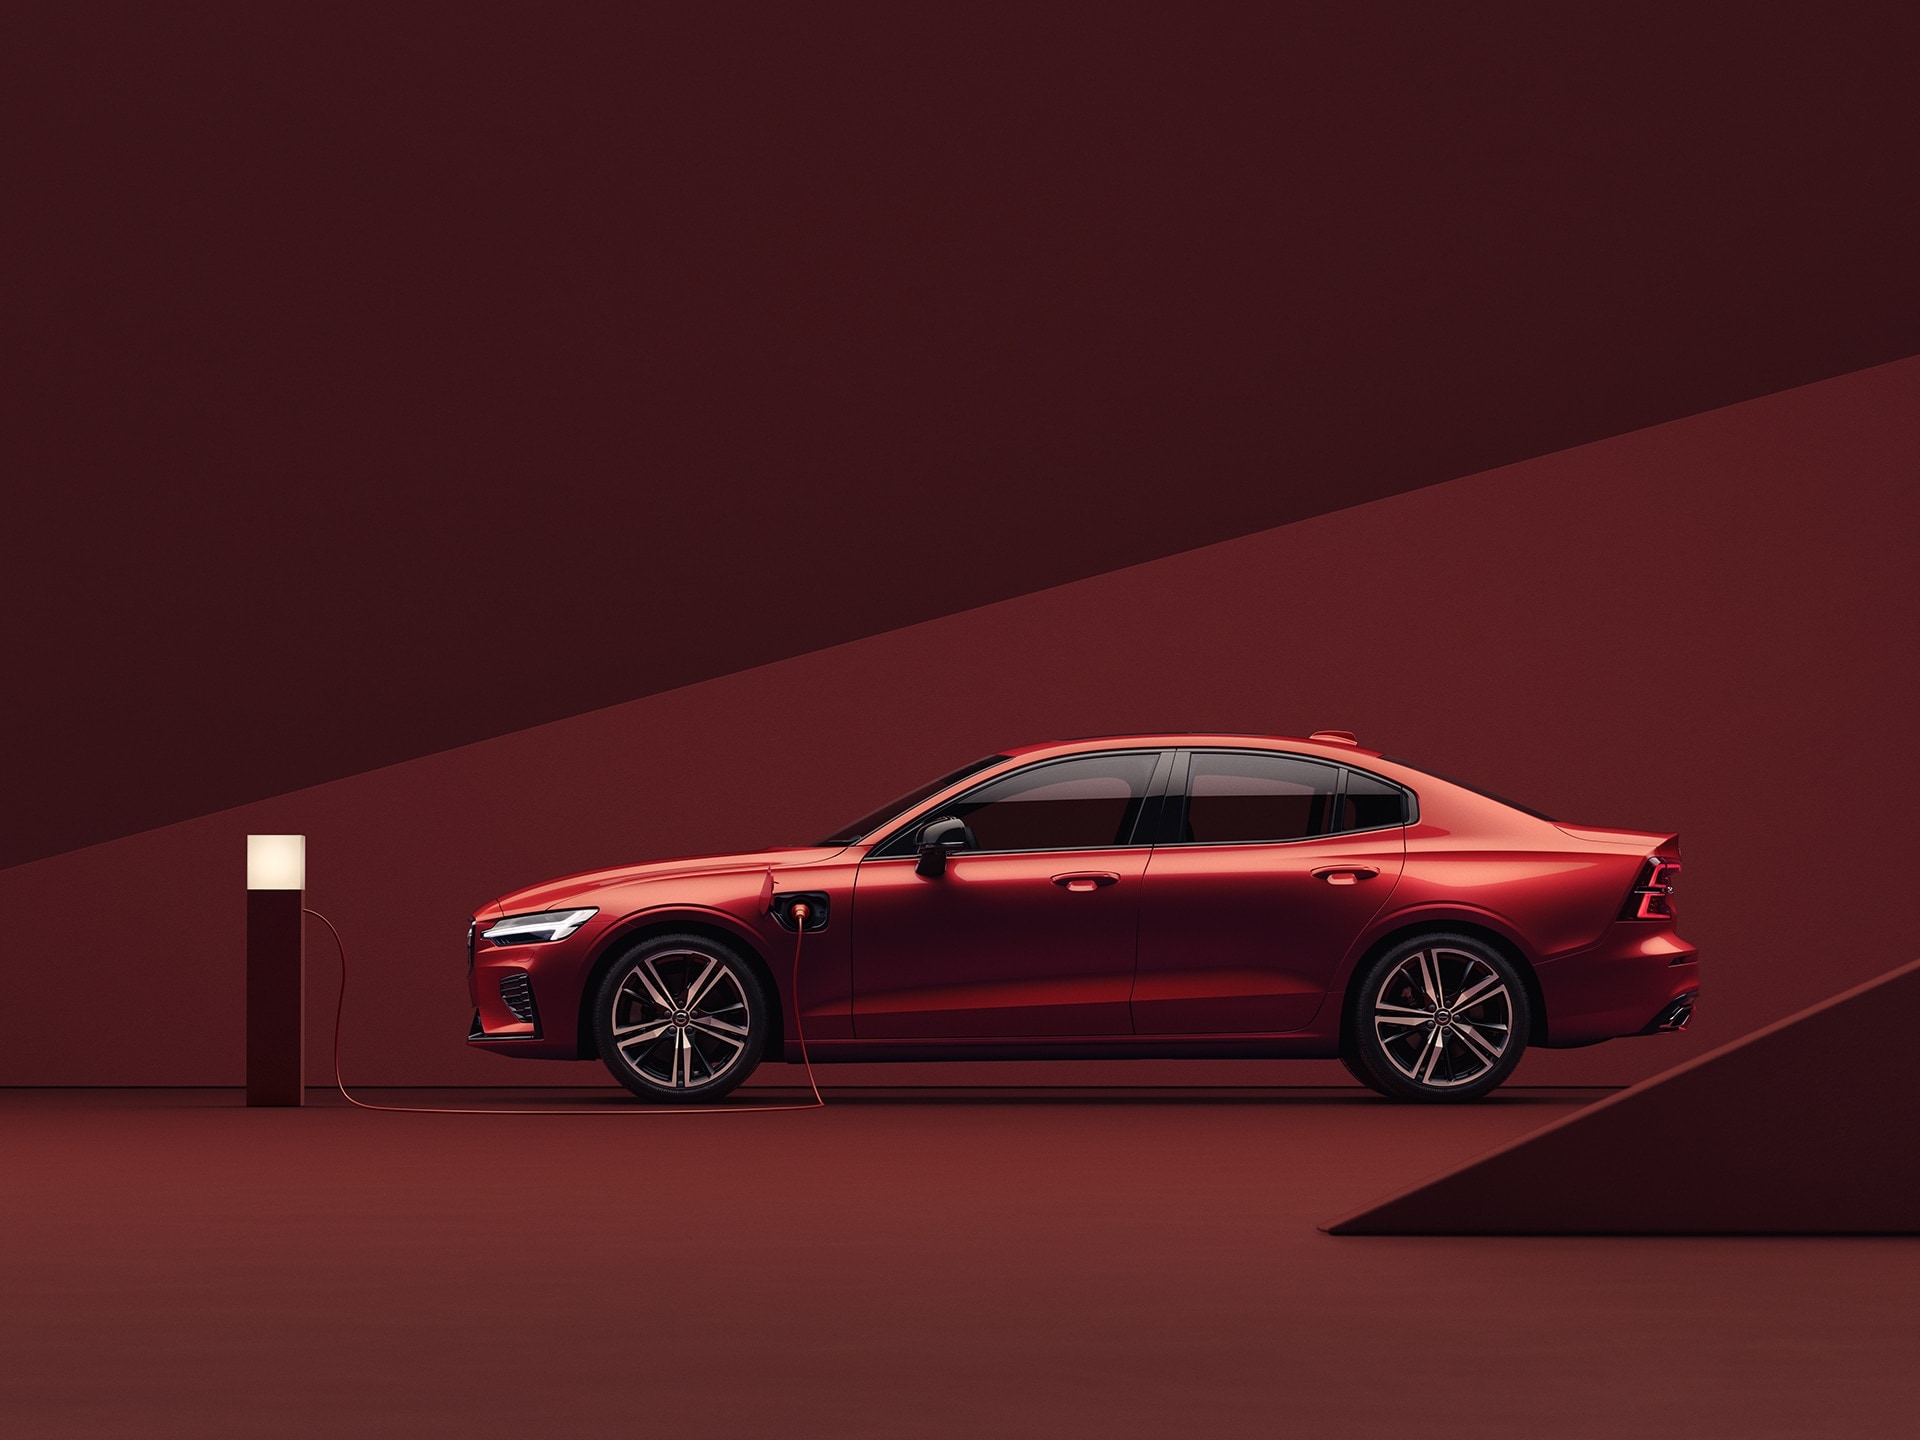 Volvo S60 Recharge rouge en charge dans un environnement rouge.